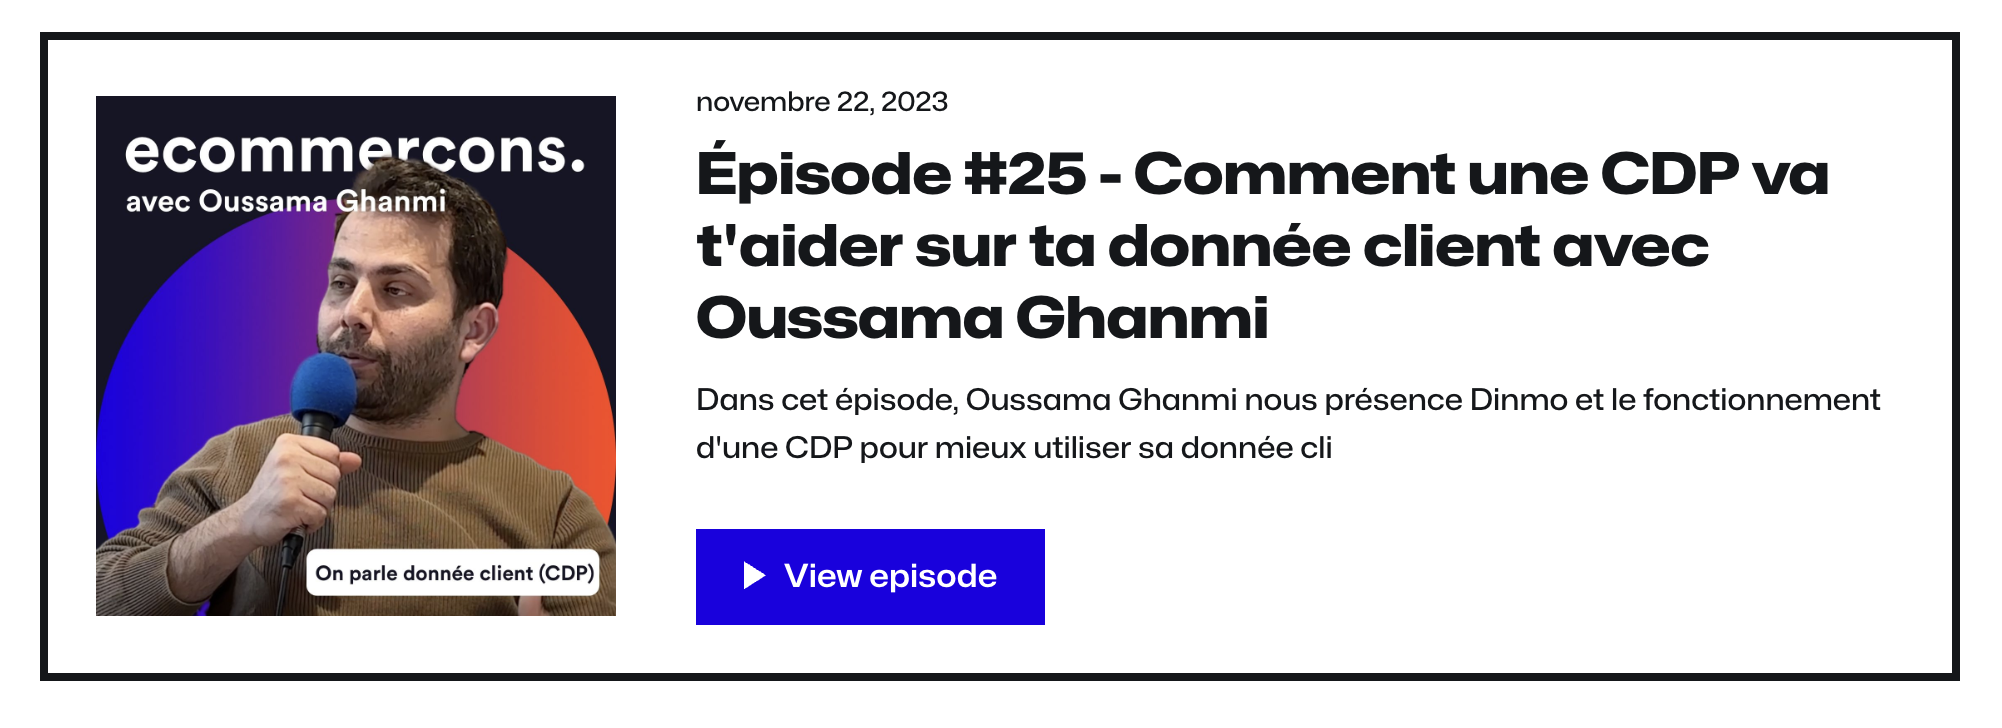 Photo de couverture du podcast e-commerçons auquel a participé notre CEO Oussama Ghanmi.